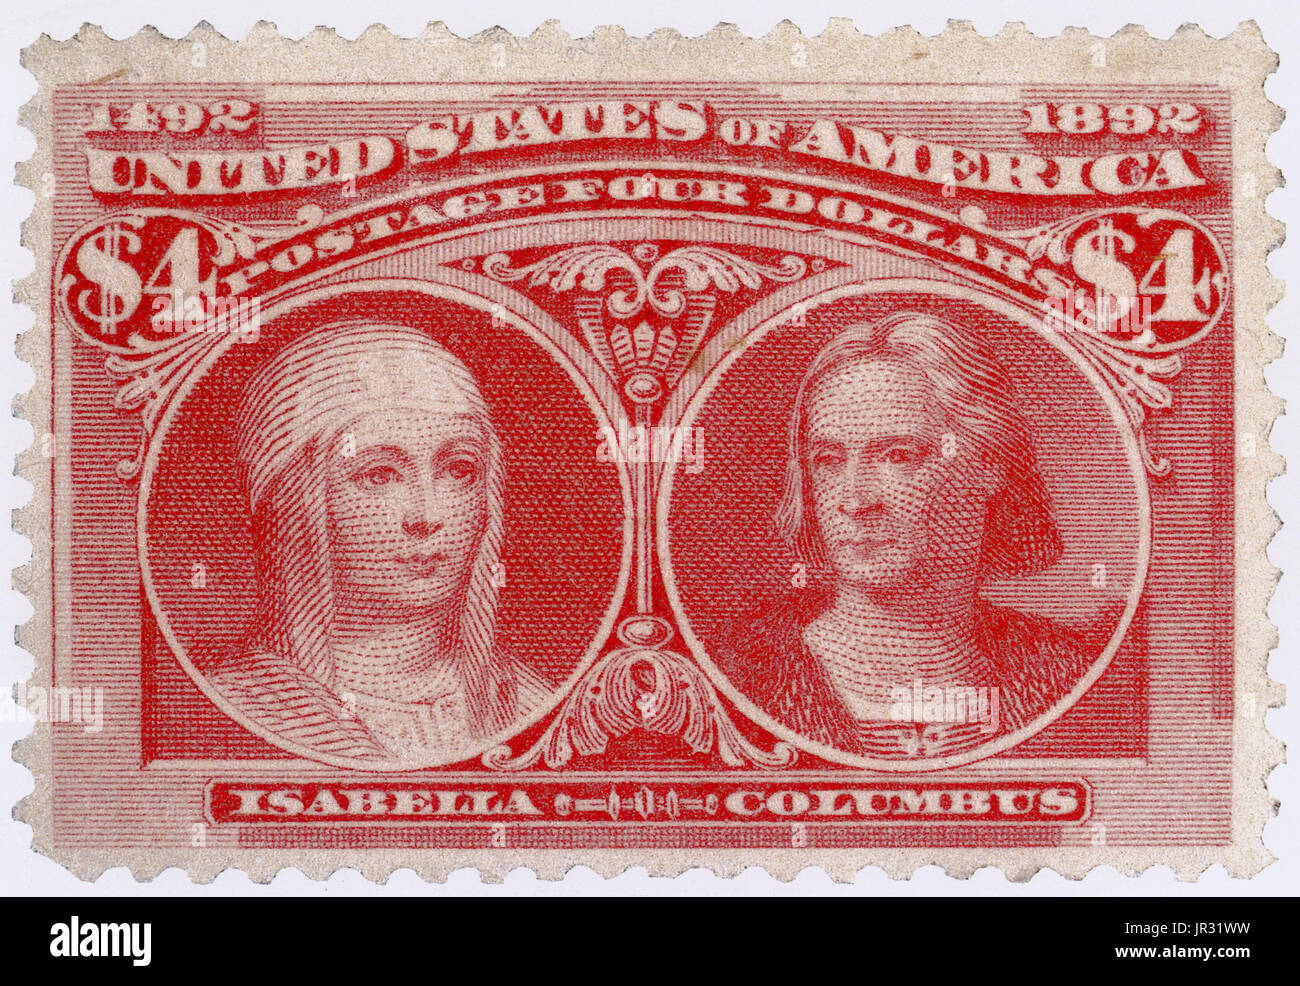 Isabella und Columbus, USA Briefmarke, 1893 Stockfoto